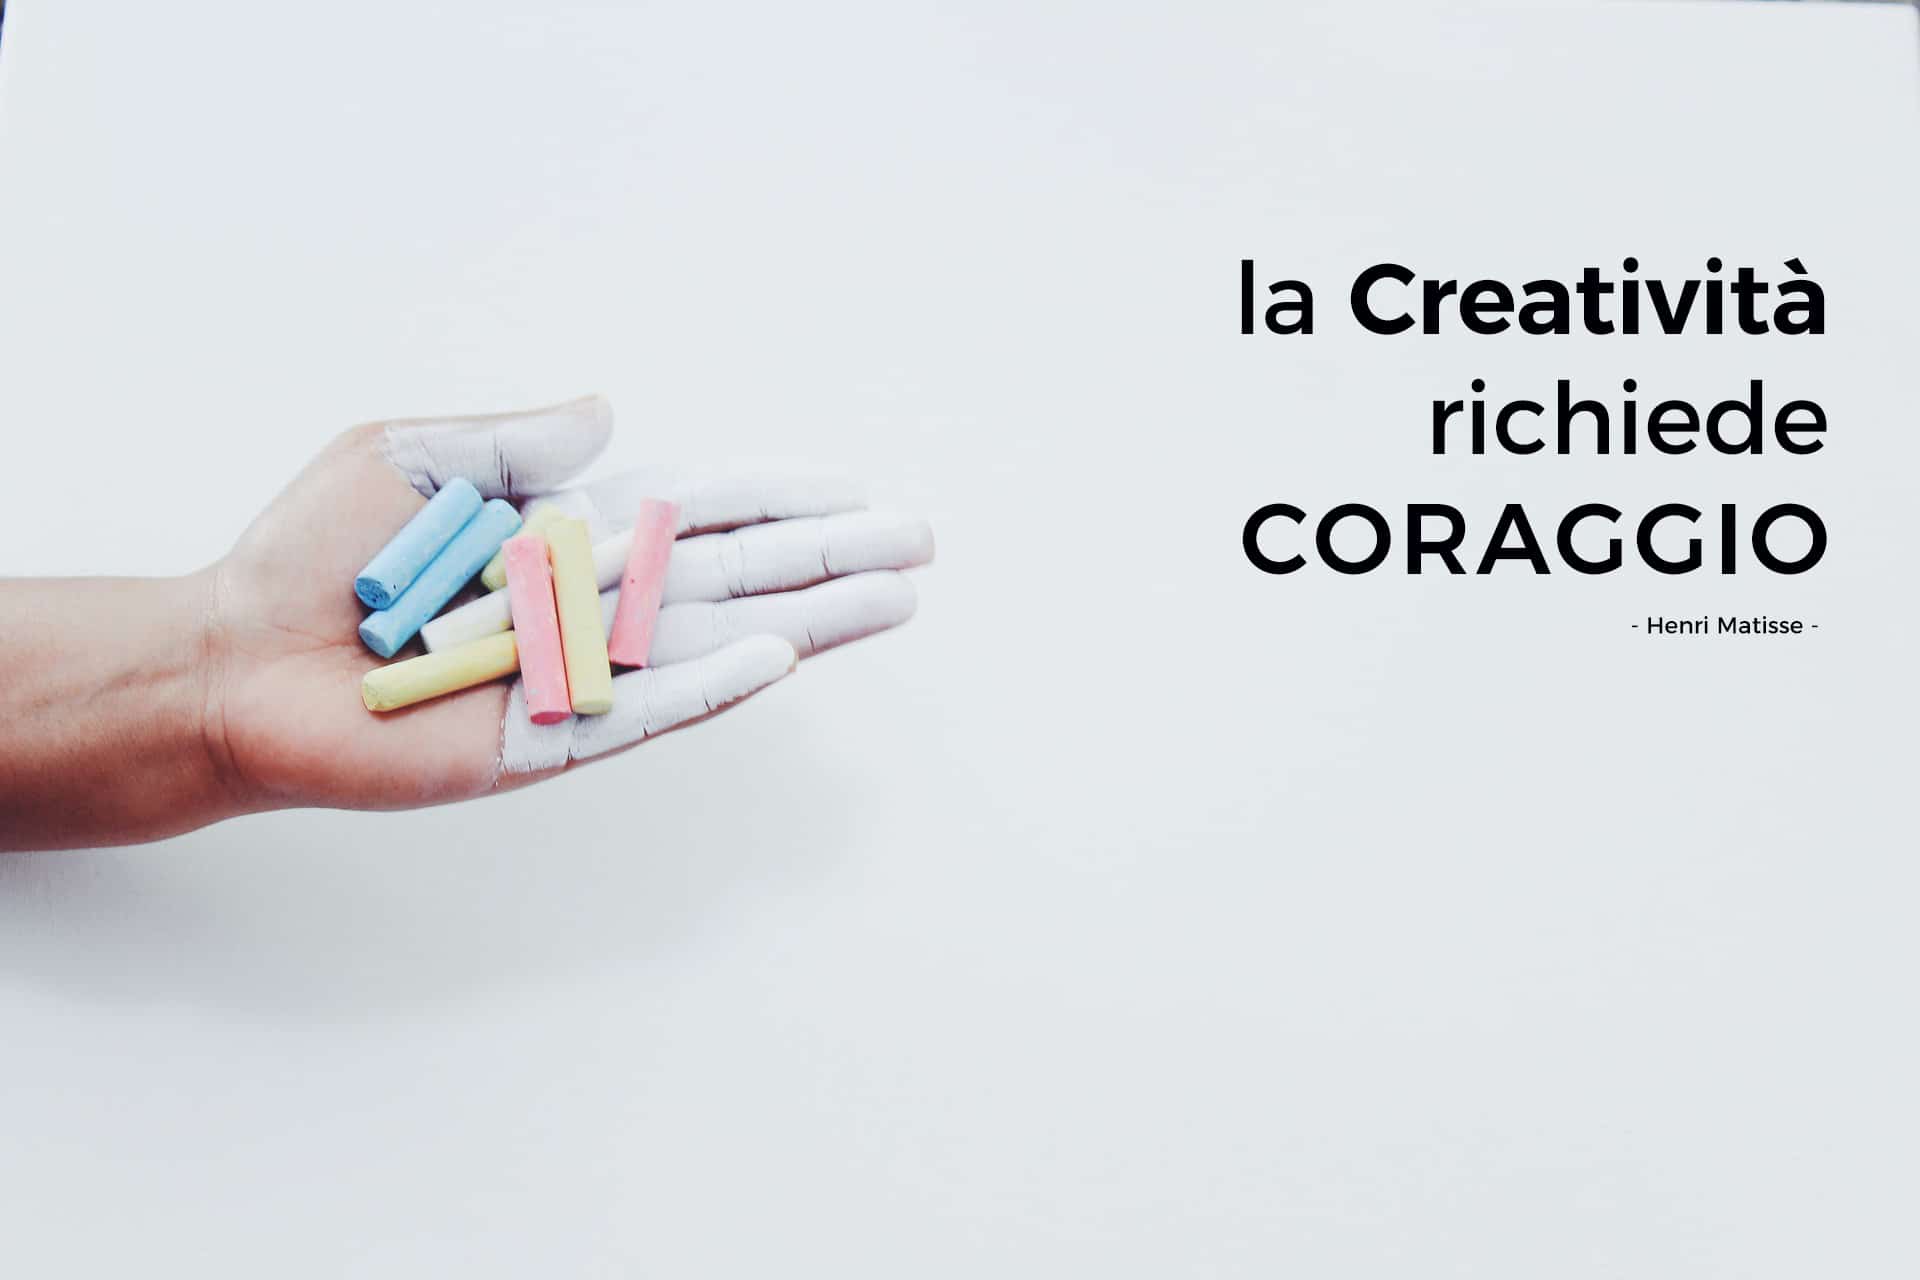 Crowdfunding e Social Network - immagine di una mano che tiene nel palmo gessetti colorati e la frase di Henri Matisse 